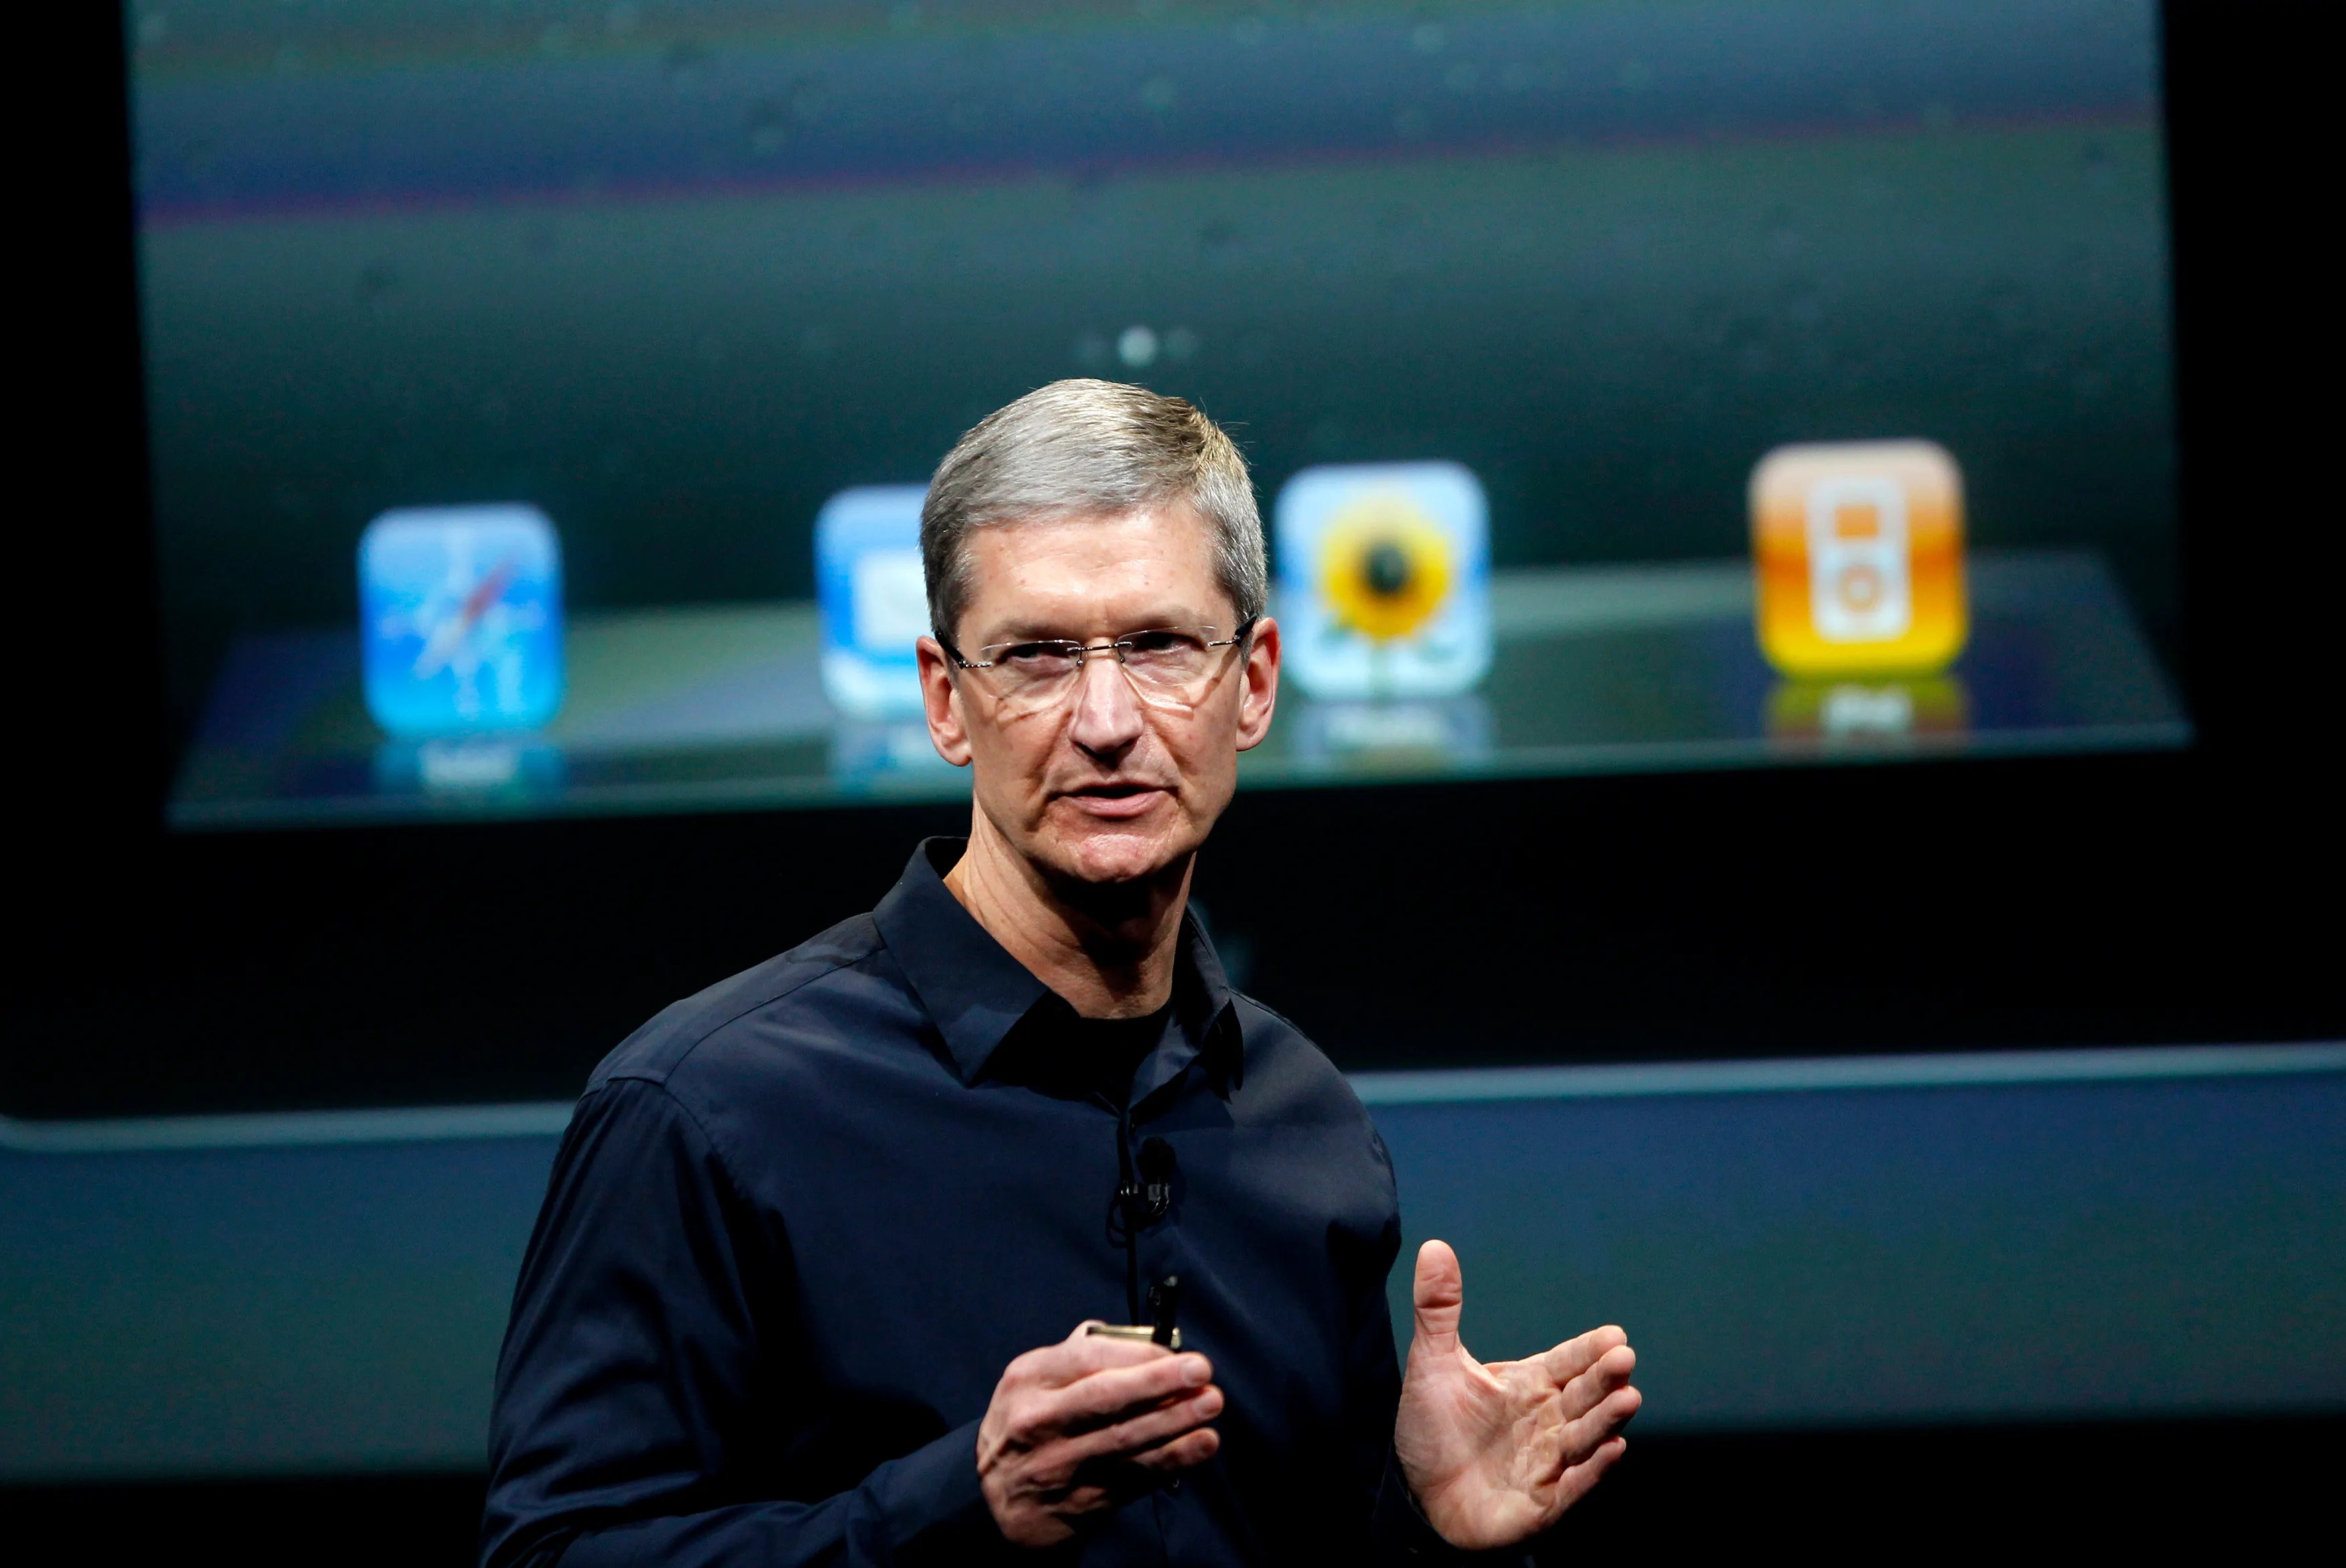 Apple dışarıya bilgi sızdıran çalışanını kovdu: Nasıl yakalandı?